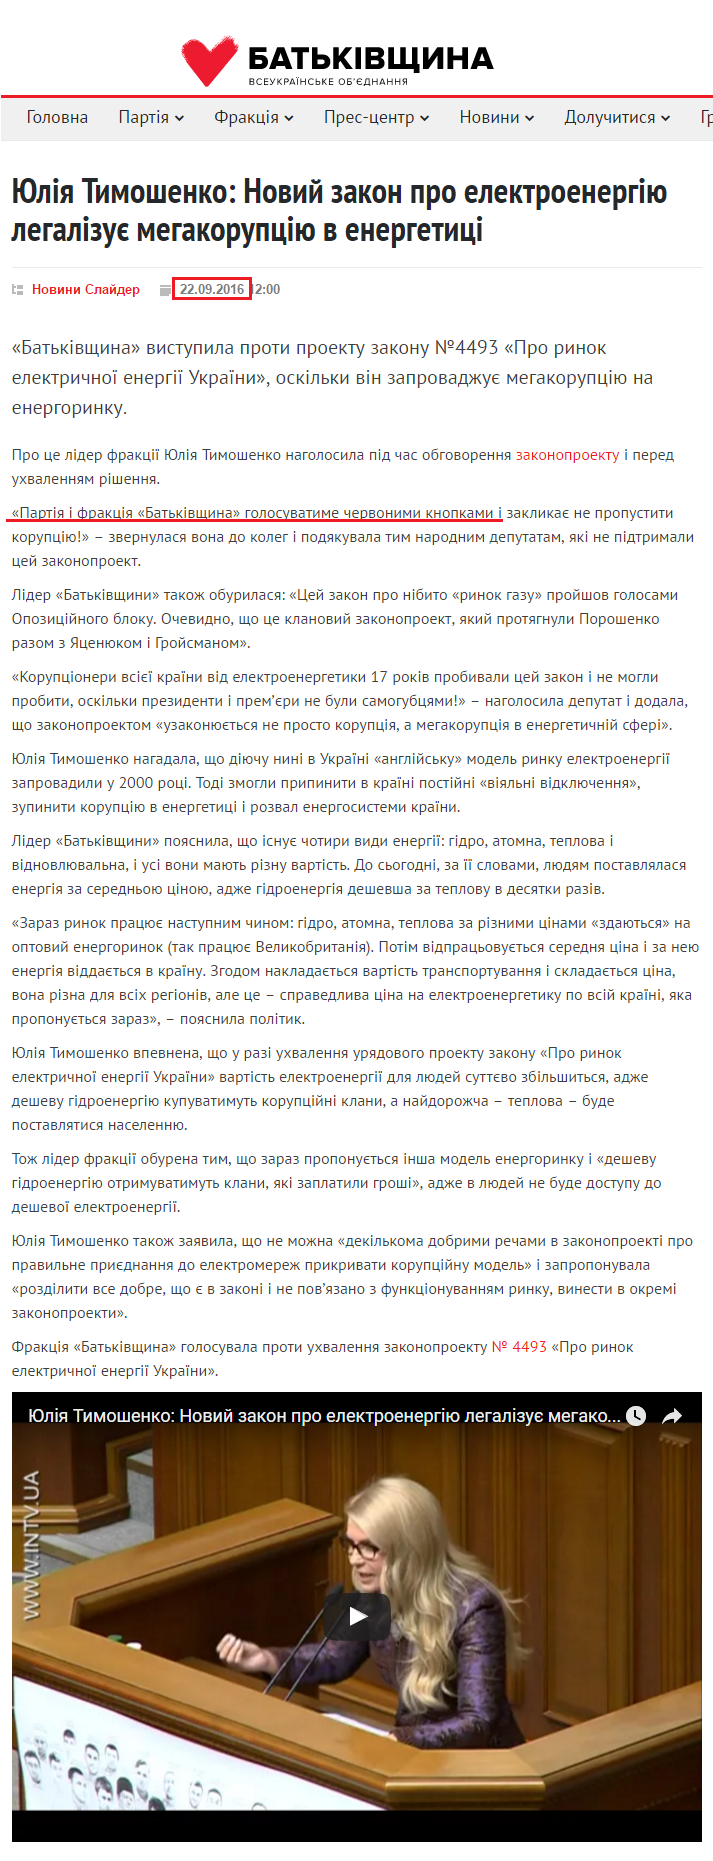 http://ba.org.ua/yuliya-timoshenko-novij-zakon-pro-elektroenergiyu-legalizuye-megakorupciyu-v-energetichnij-sferi/